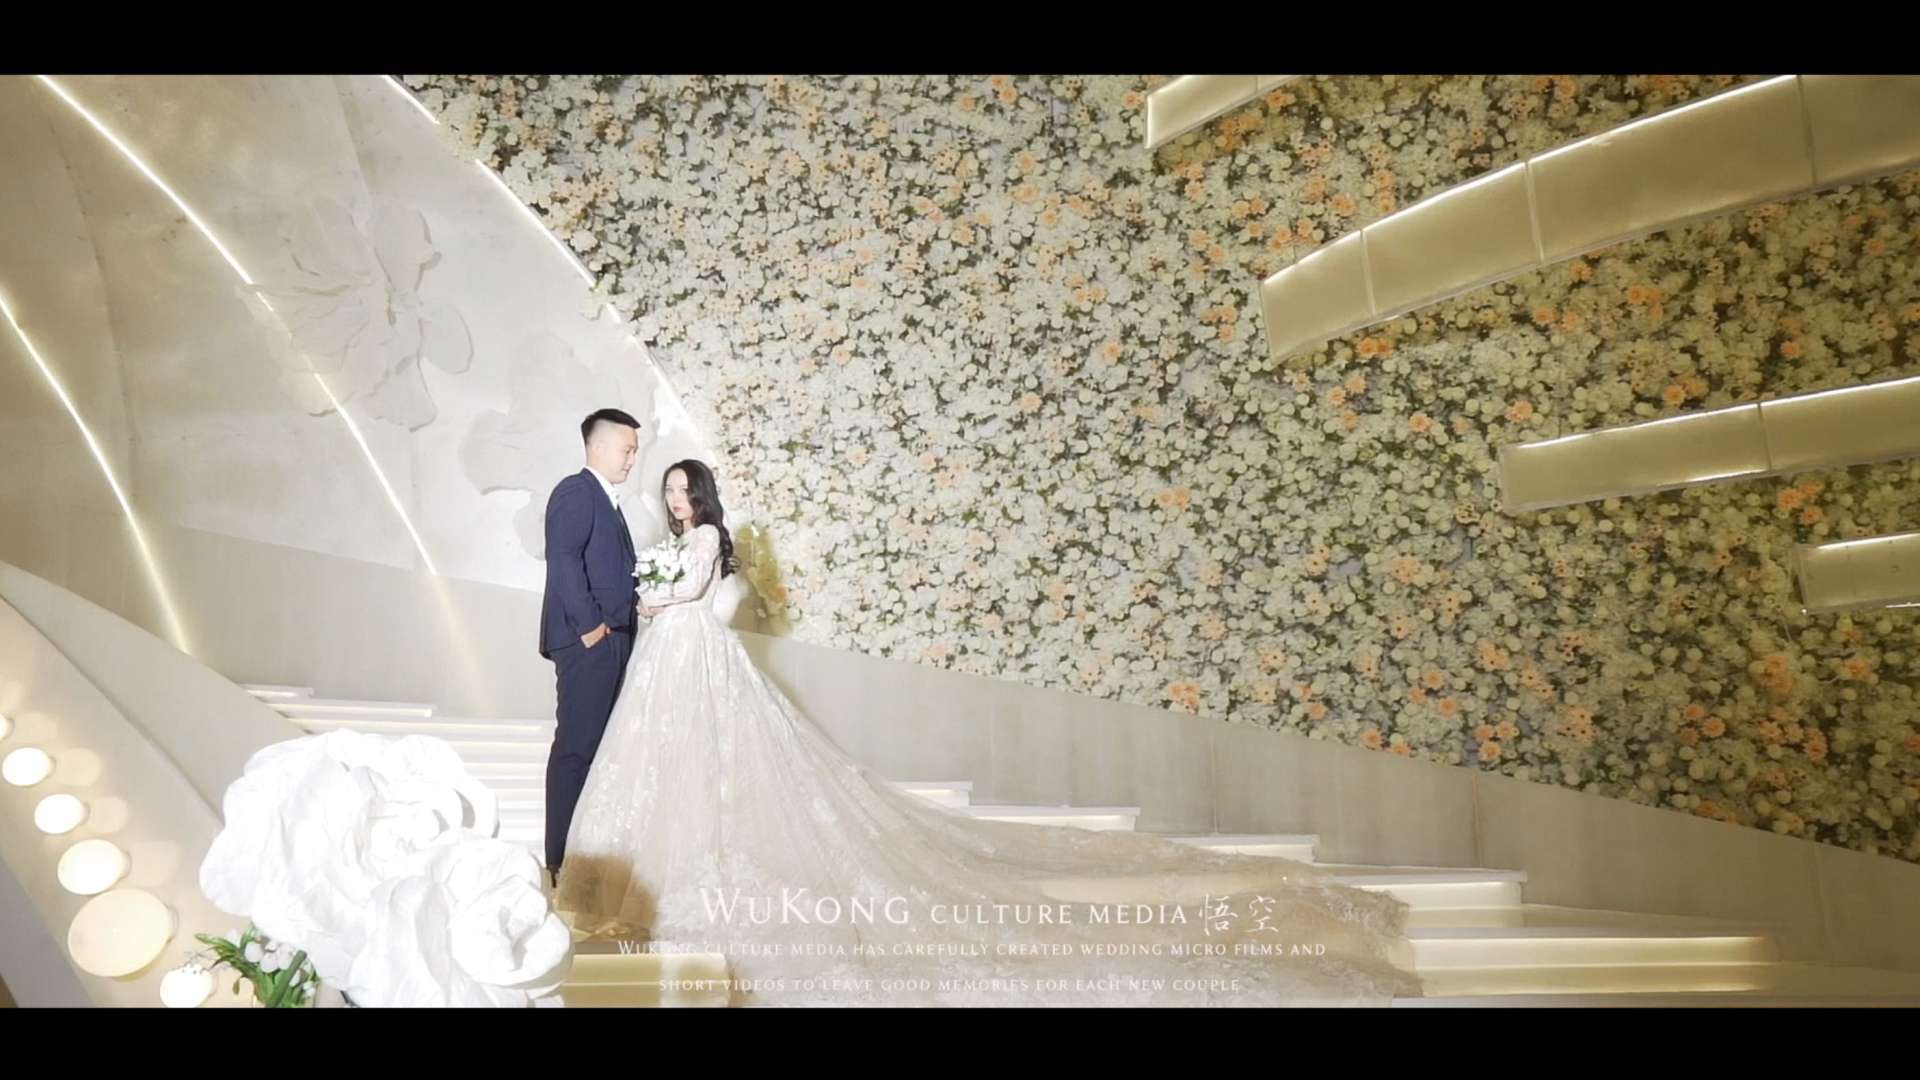 「 Mr. Zheng & Ms. Mi 」Feb 18, 2023婚礼快剪